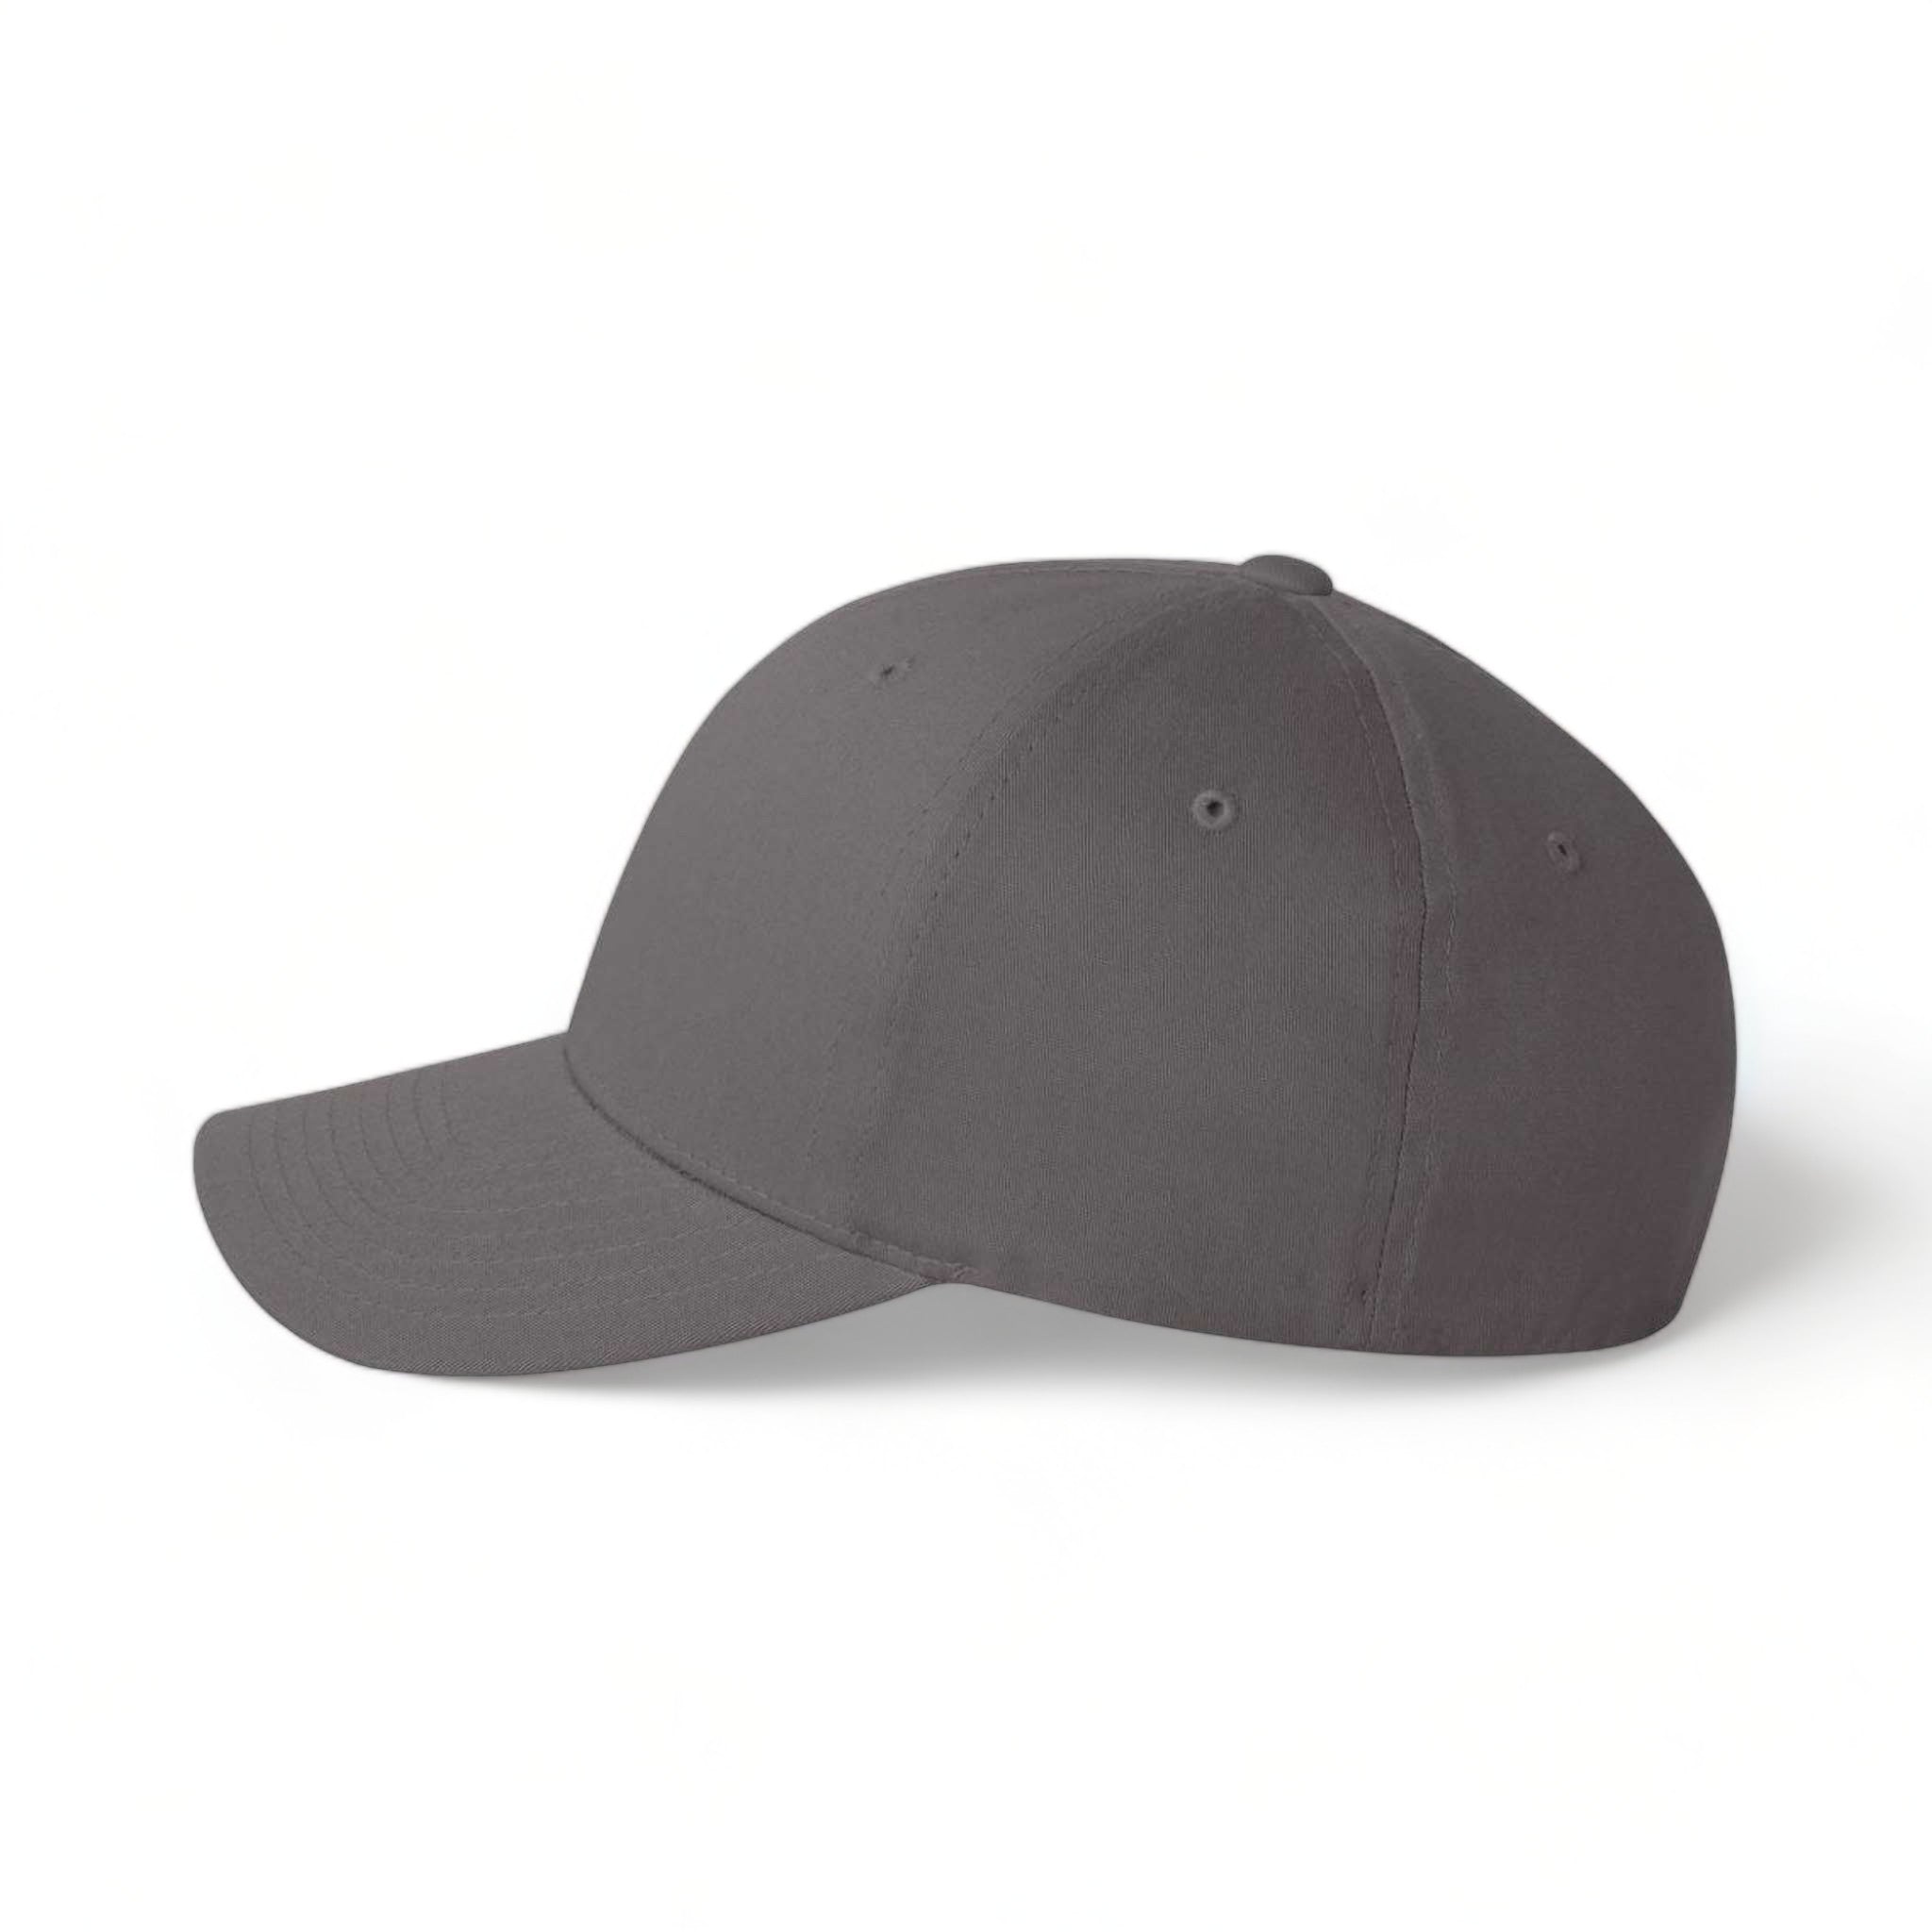 Side view of Flexfit 5001 custom hat in grey